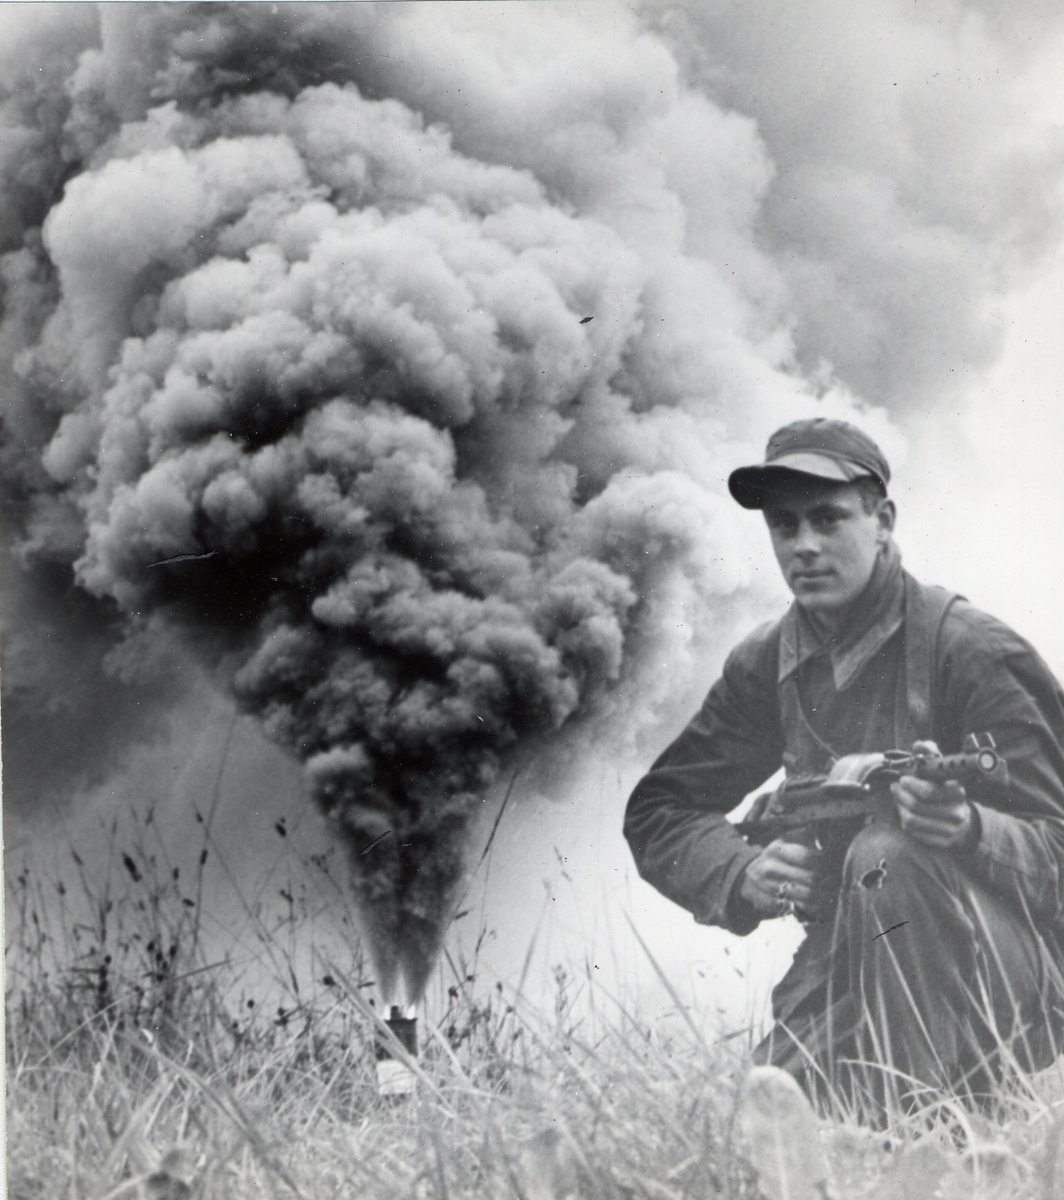 Soldat står på knä med eldberedd kulsprutepistol m/1945 i händerna. I bakgrungen brinner en rökfackla.